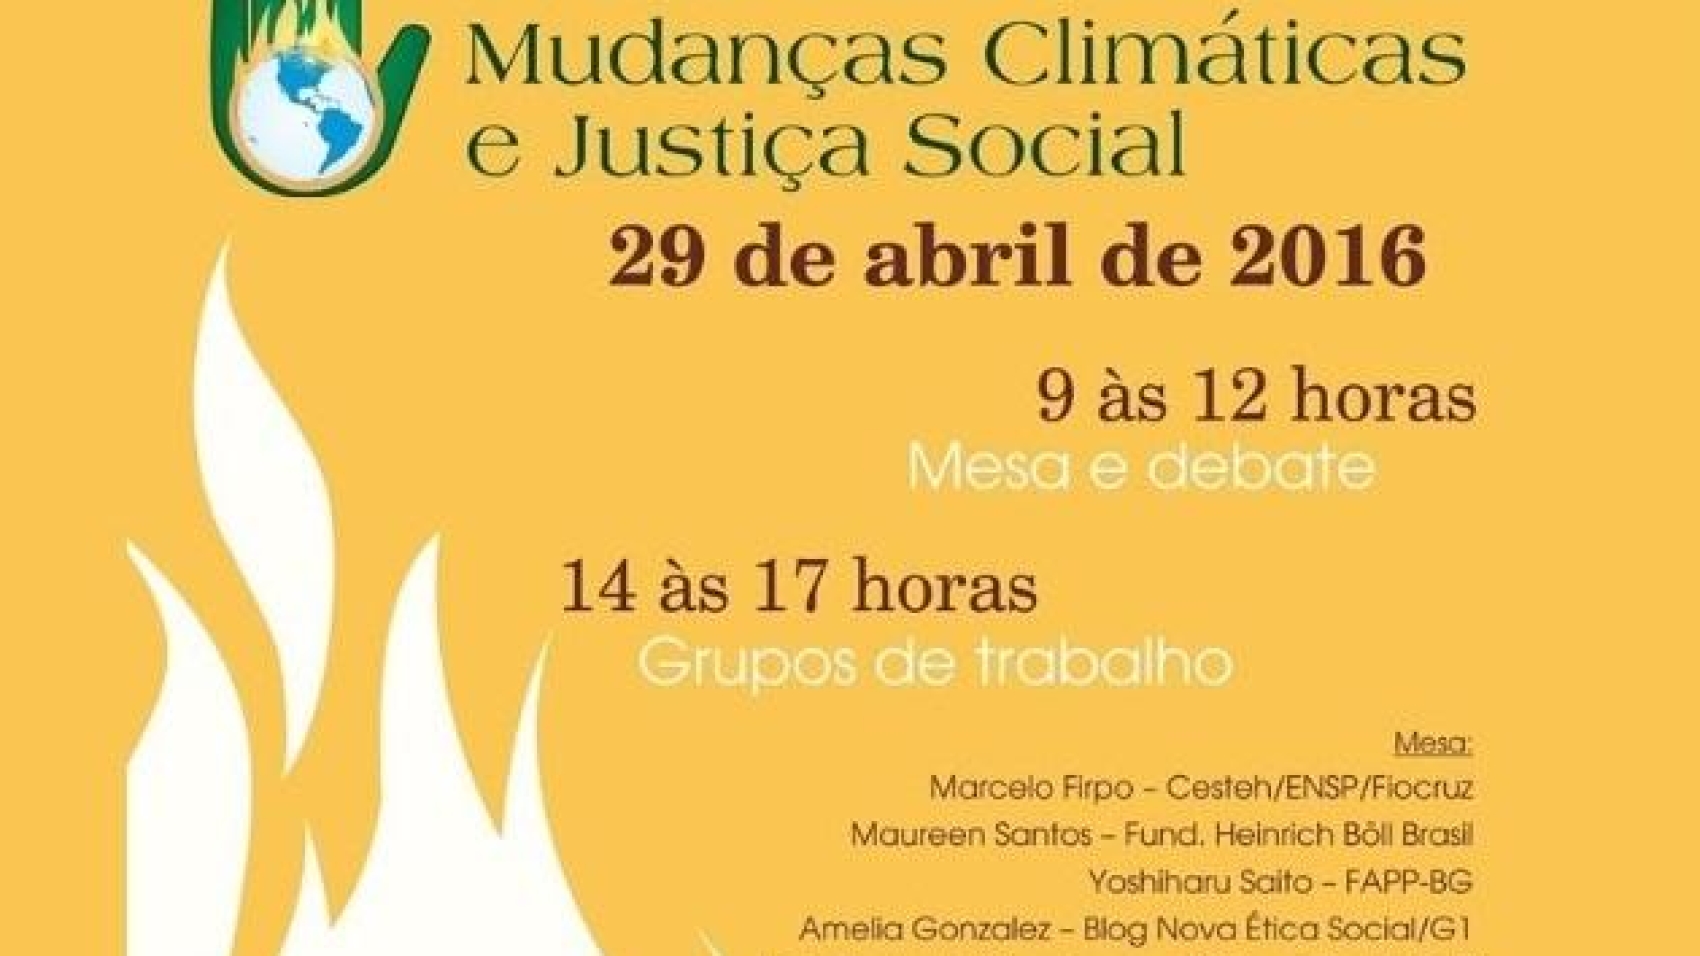 forum_de_mudancas_climaticas_bollbrasil_0